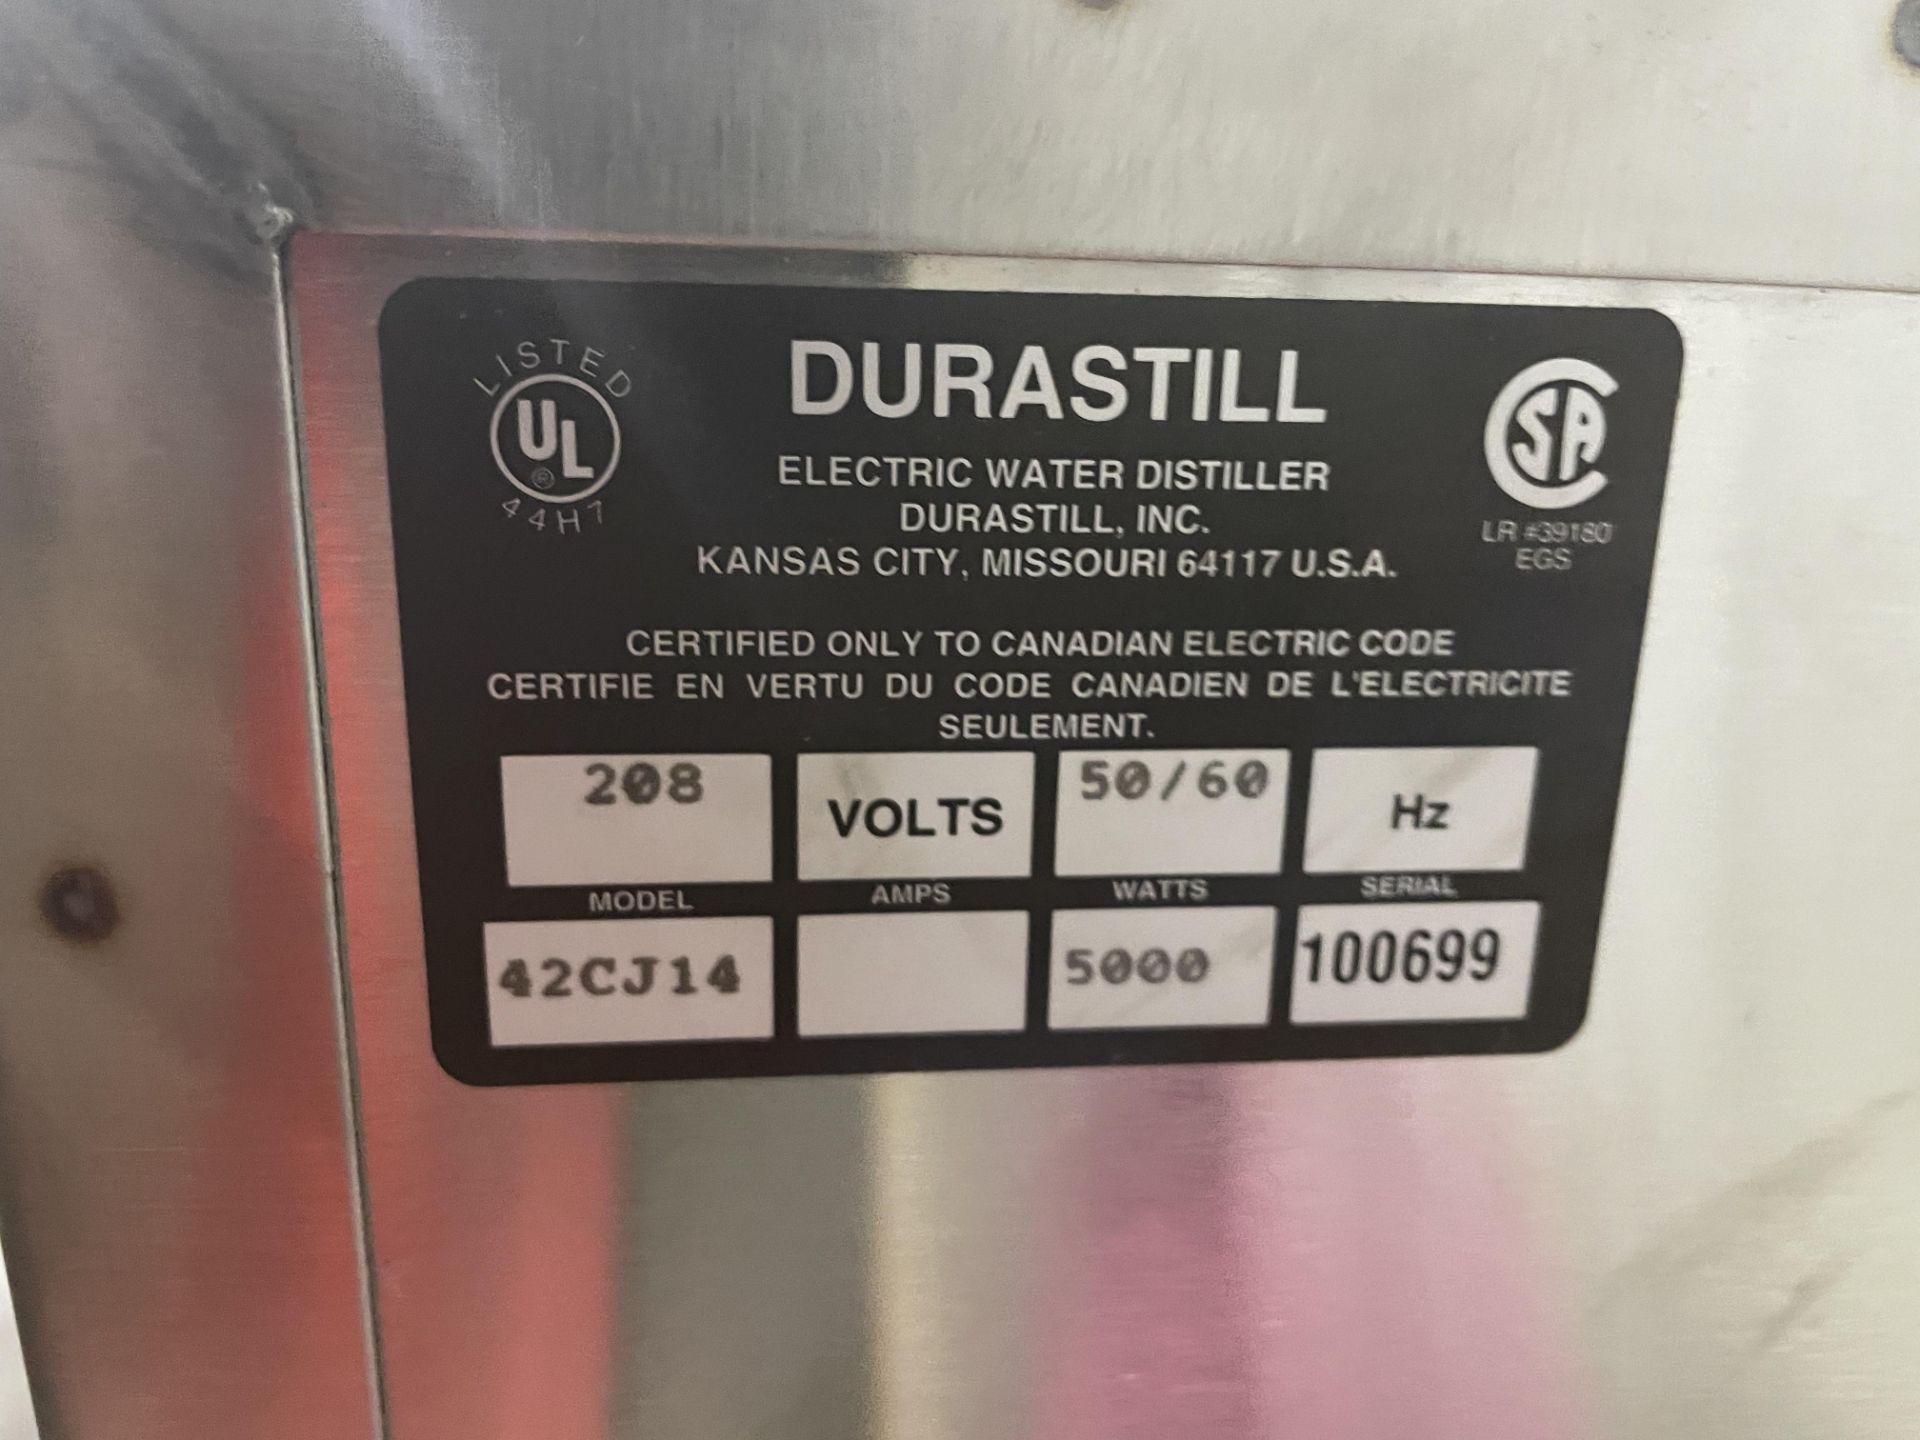 Durastill electric water distiller model 42CJ14 sn 100699 RIGGING/LOADING FEE - $50 - Image 7 of 7